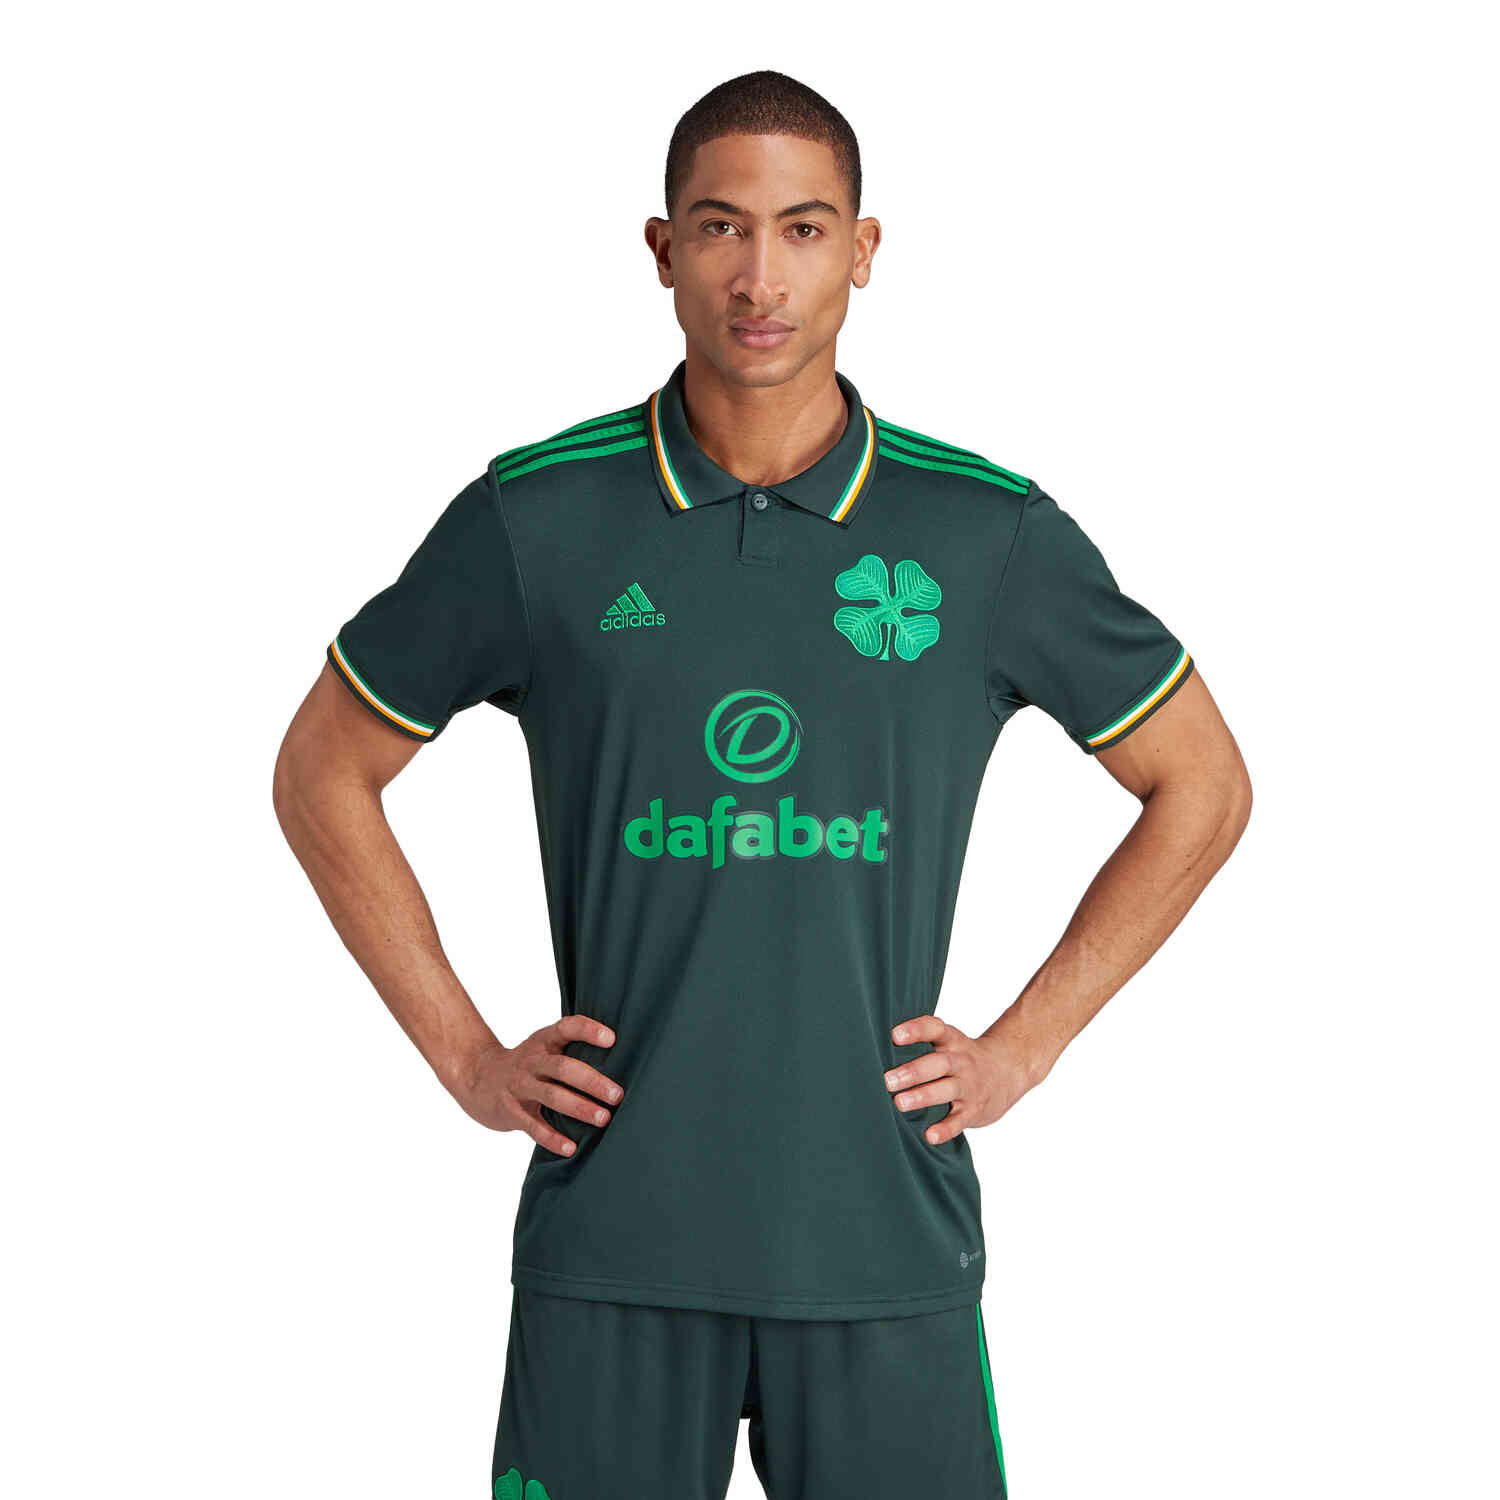 Men's Celtic 2021 - 2022 Third 3rd Football Shirt Jersey